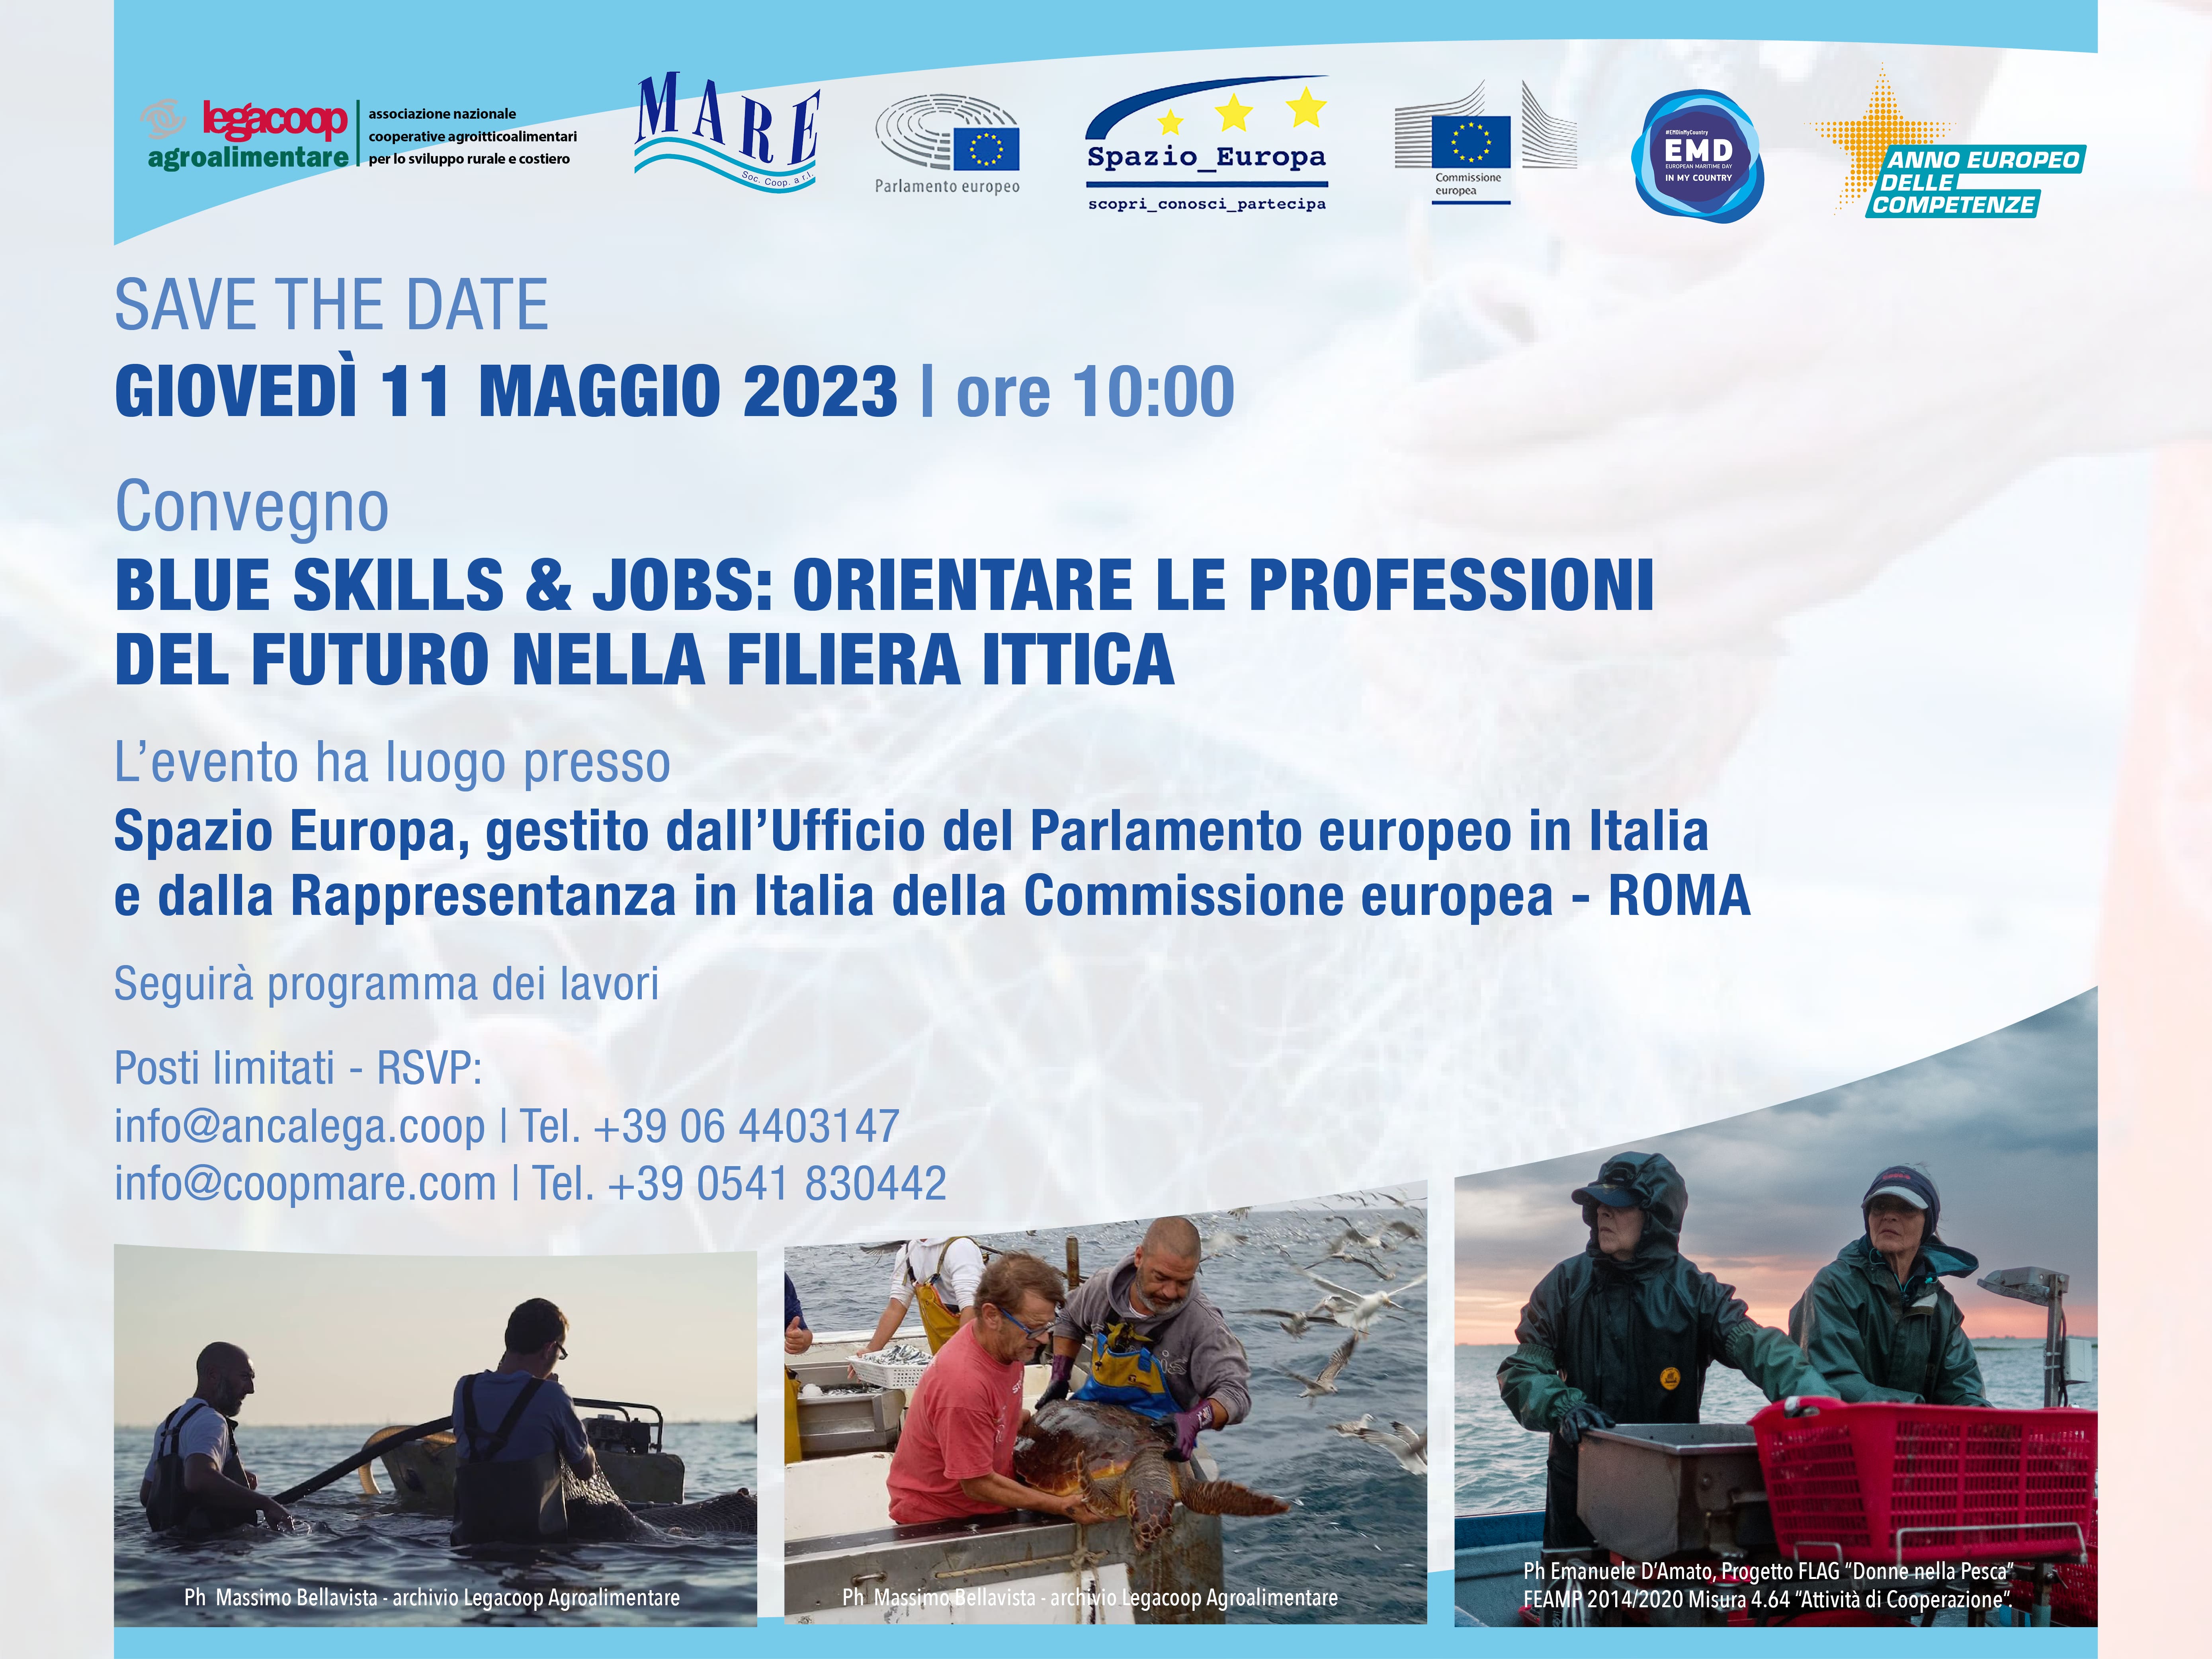 SAVE THE DATE Convegno Blue Skills and Jobs - orientare le professioni del futuro nella filiera ittica 